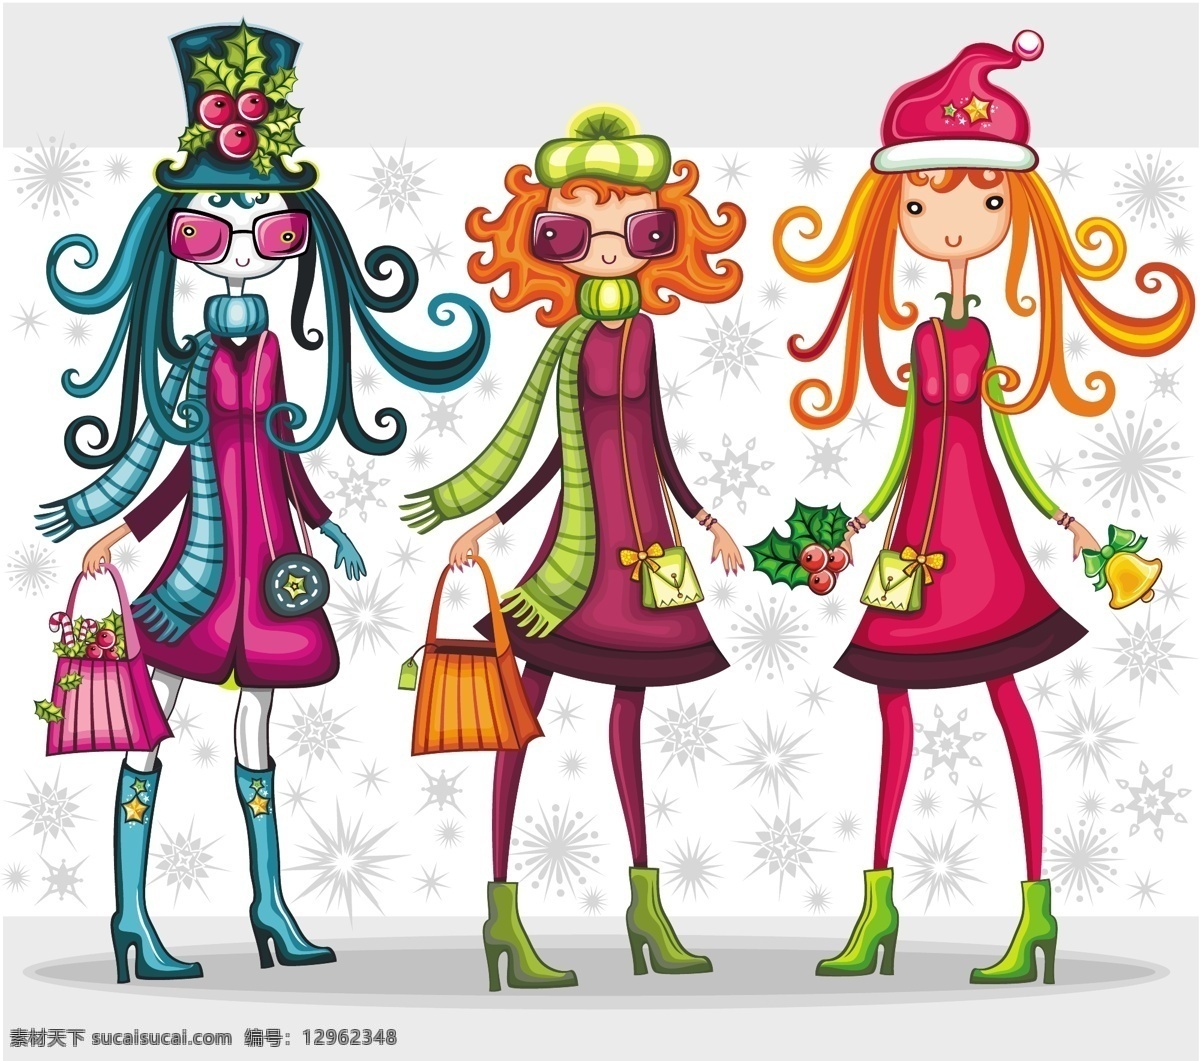 卡通 圣诞 人物 背景 动漫 少女 矢量素材 手提袋 雪花 迎圣诞 矢量图 矢量人物